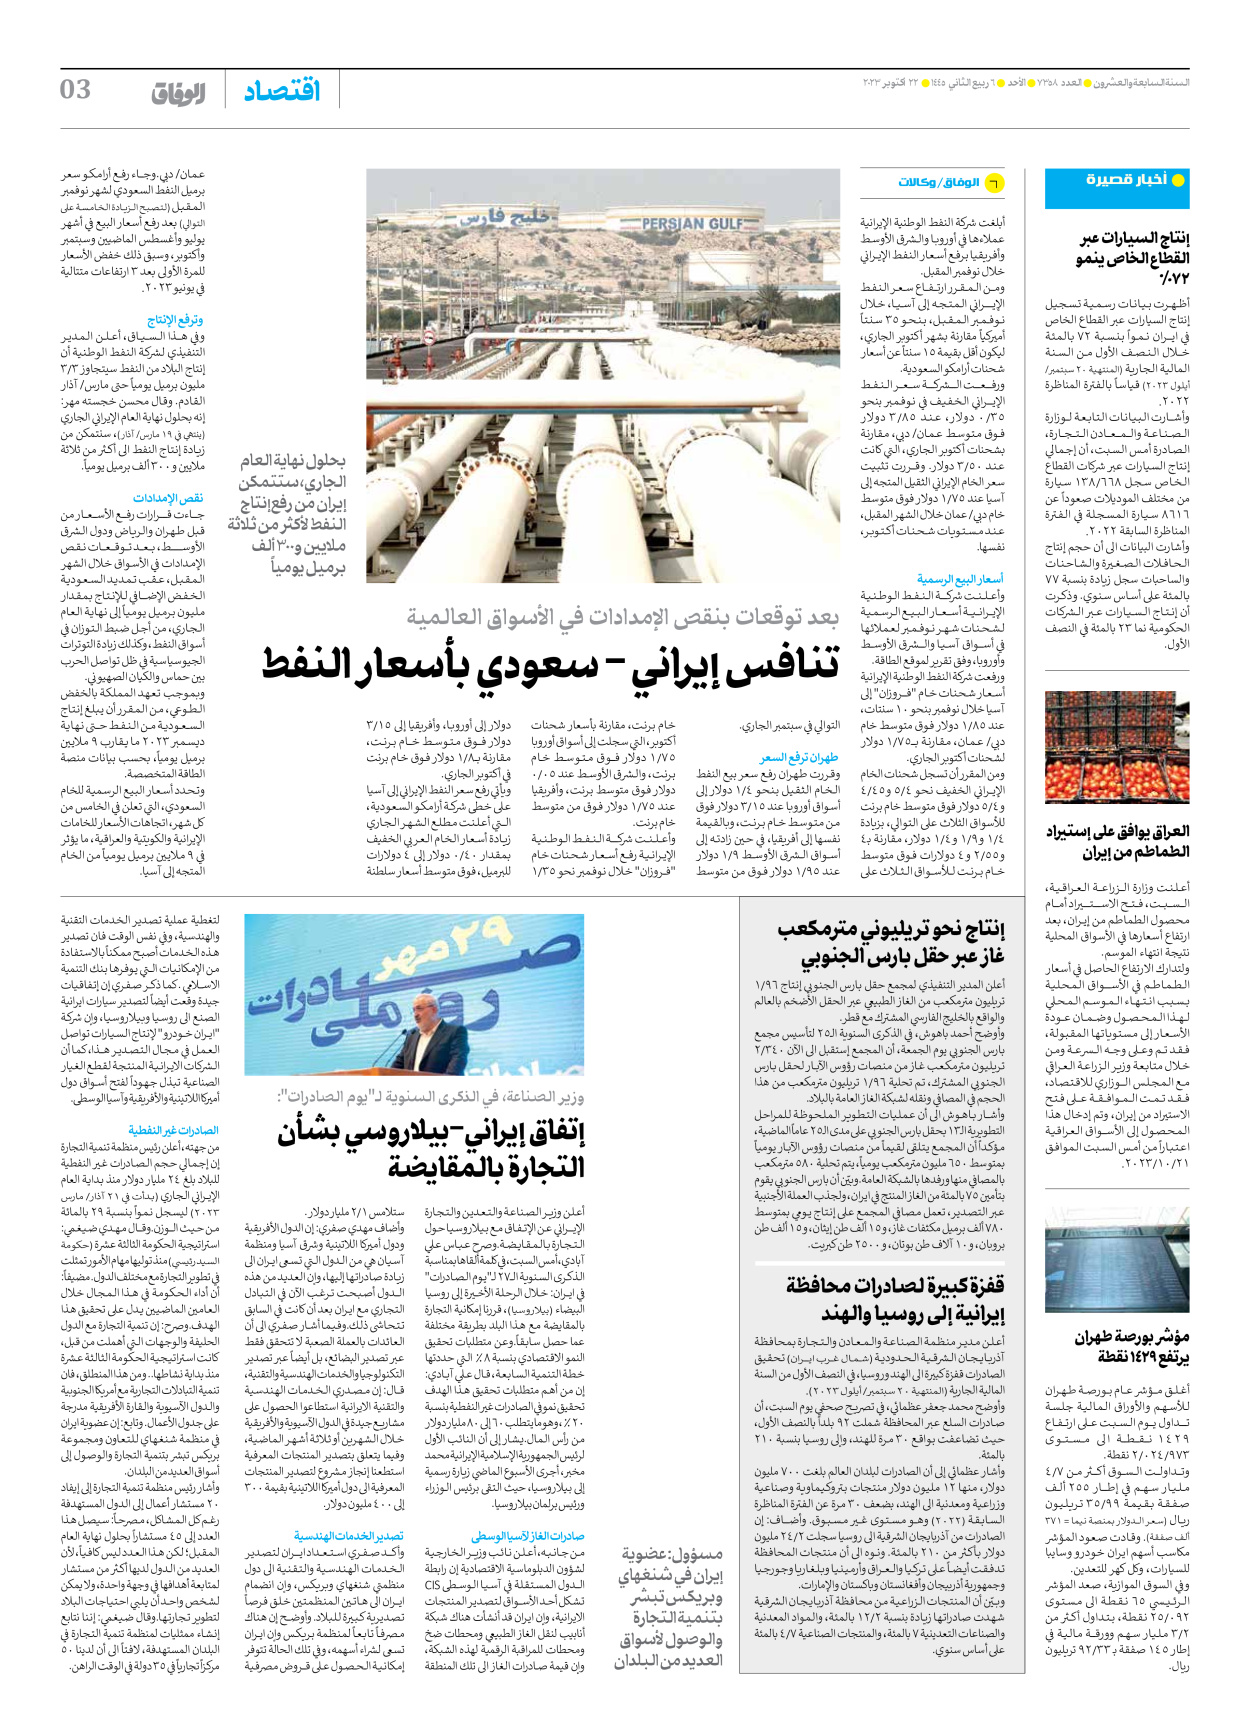 صحیفة ایران الدولیة الوفاق - العدد سبعة آلاف وثلاثمائة وثمانية وخمسون - ٢٢ أكتوبر ٢٠٢٣ - الصفحة ۳